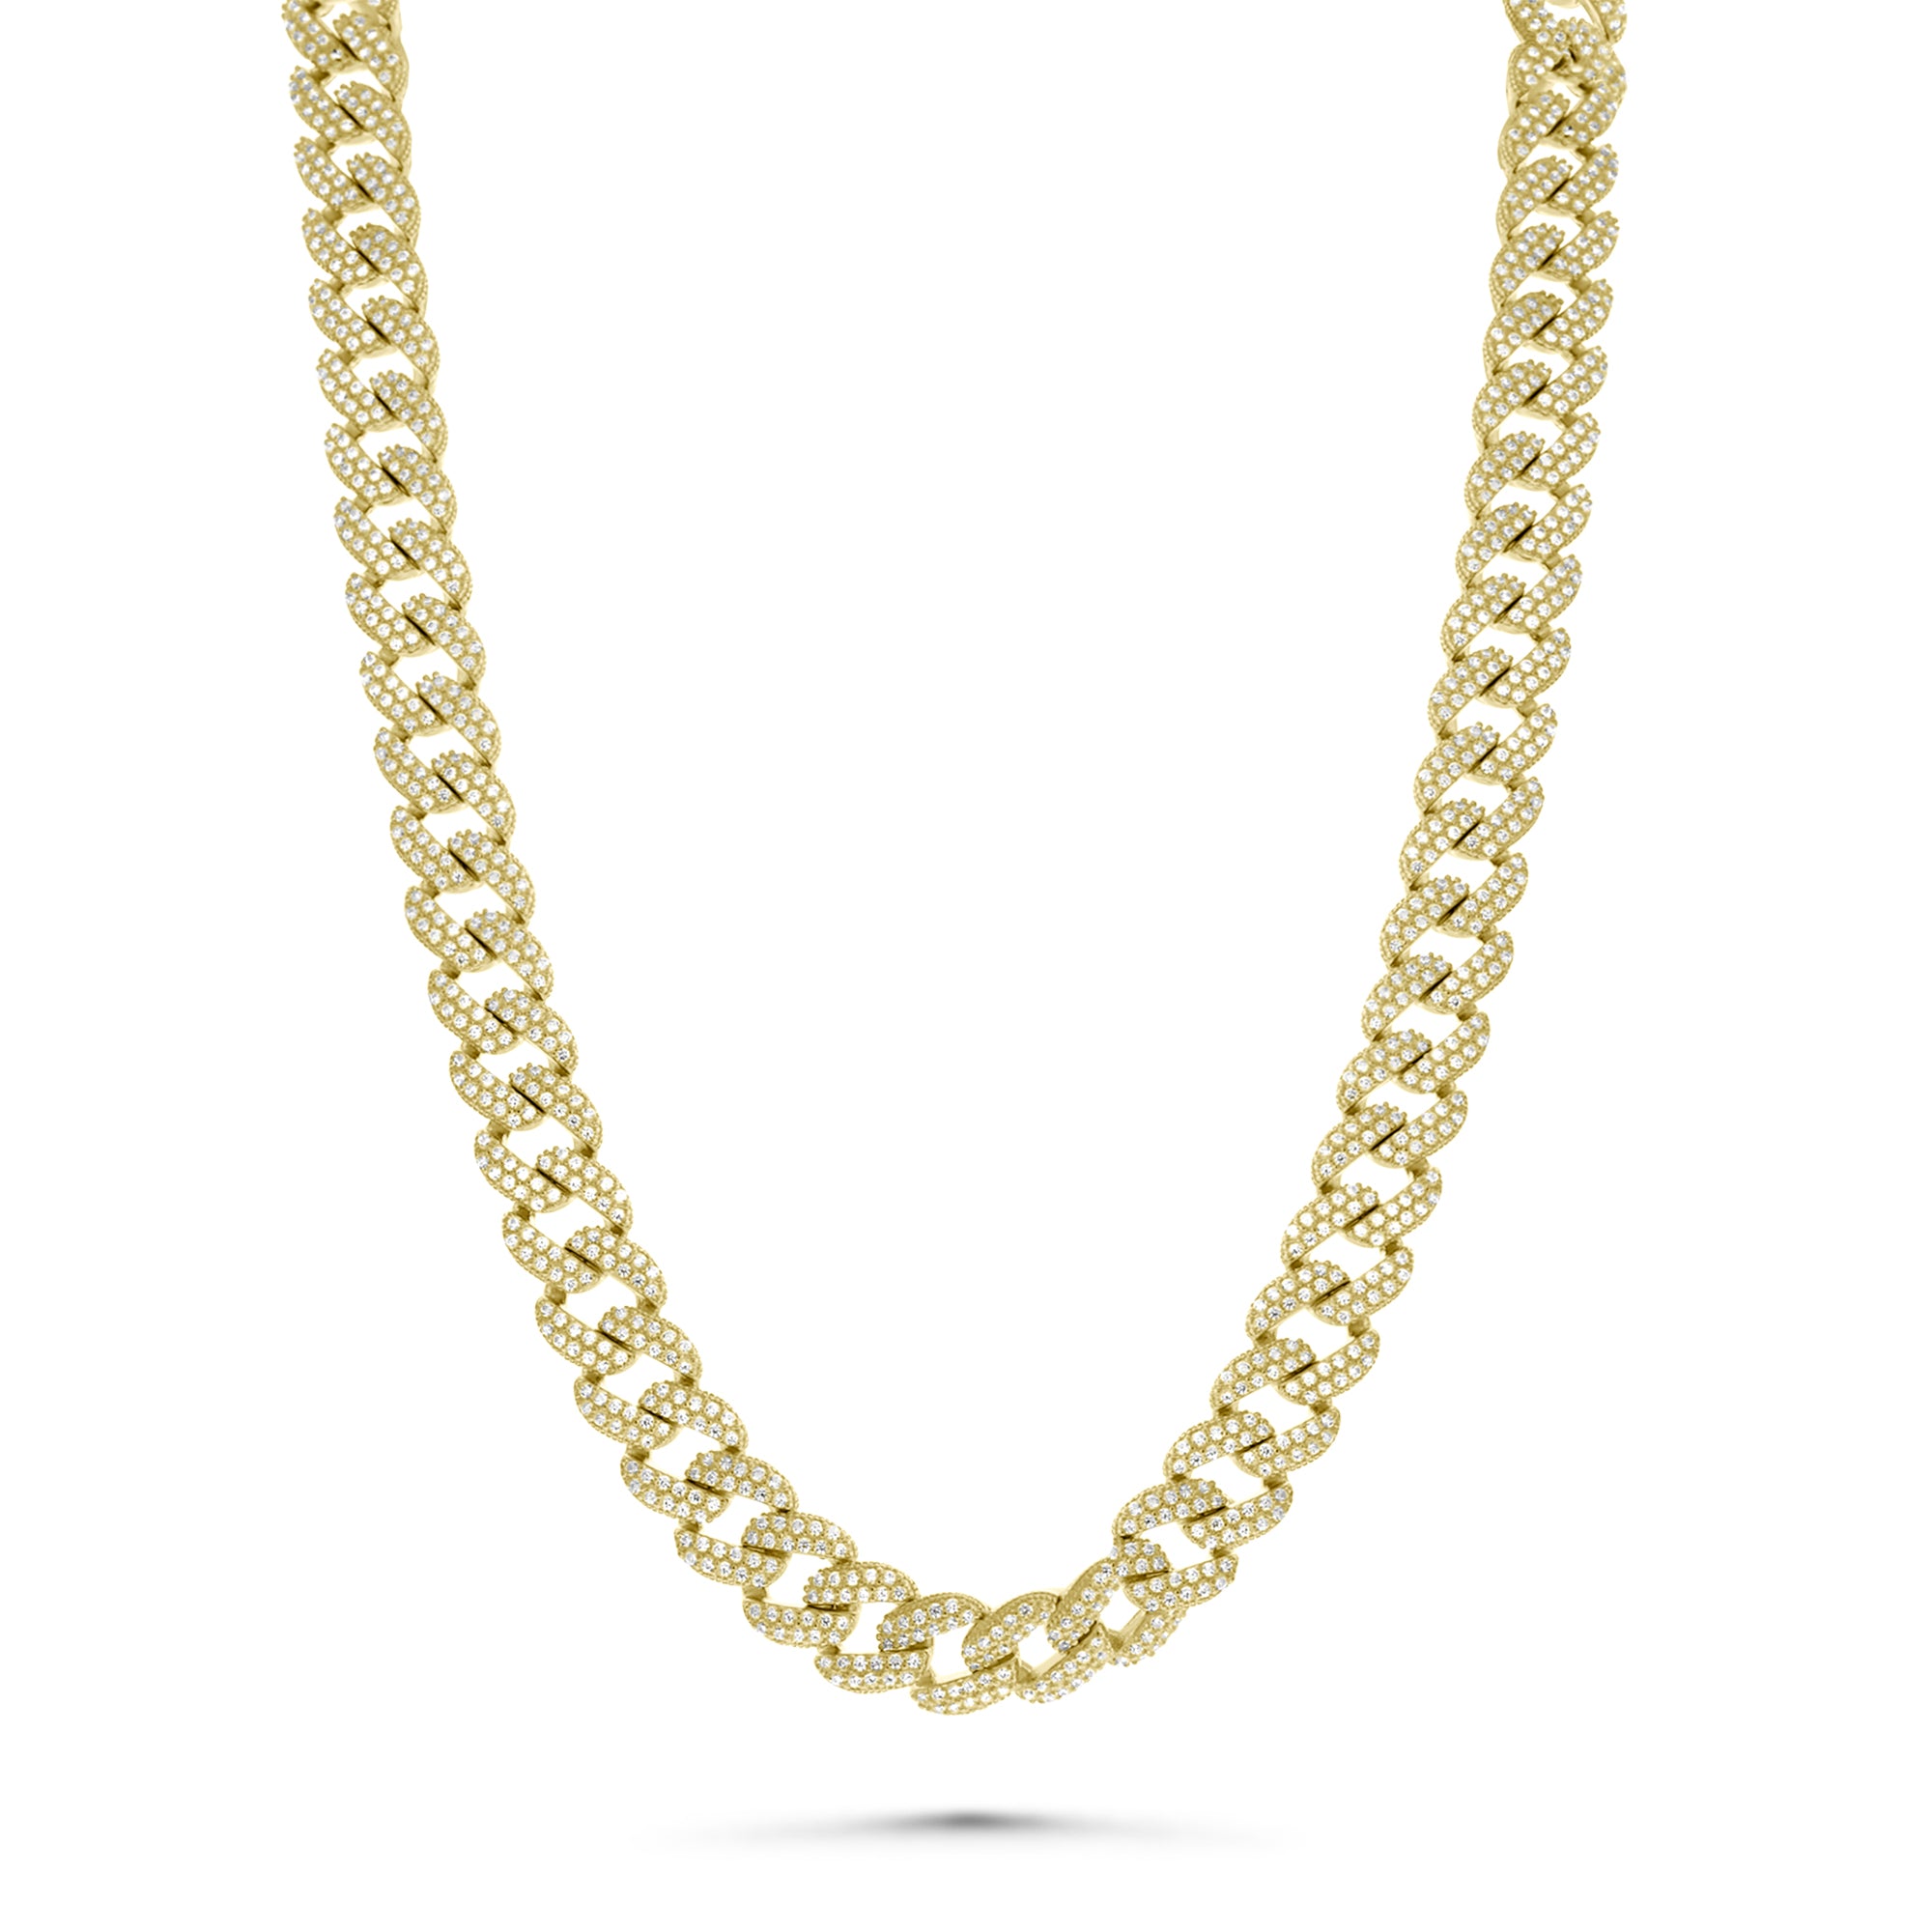 Large Gold Cuban Tennis Chain Necklace CZ